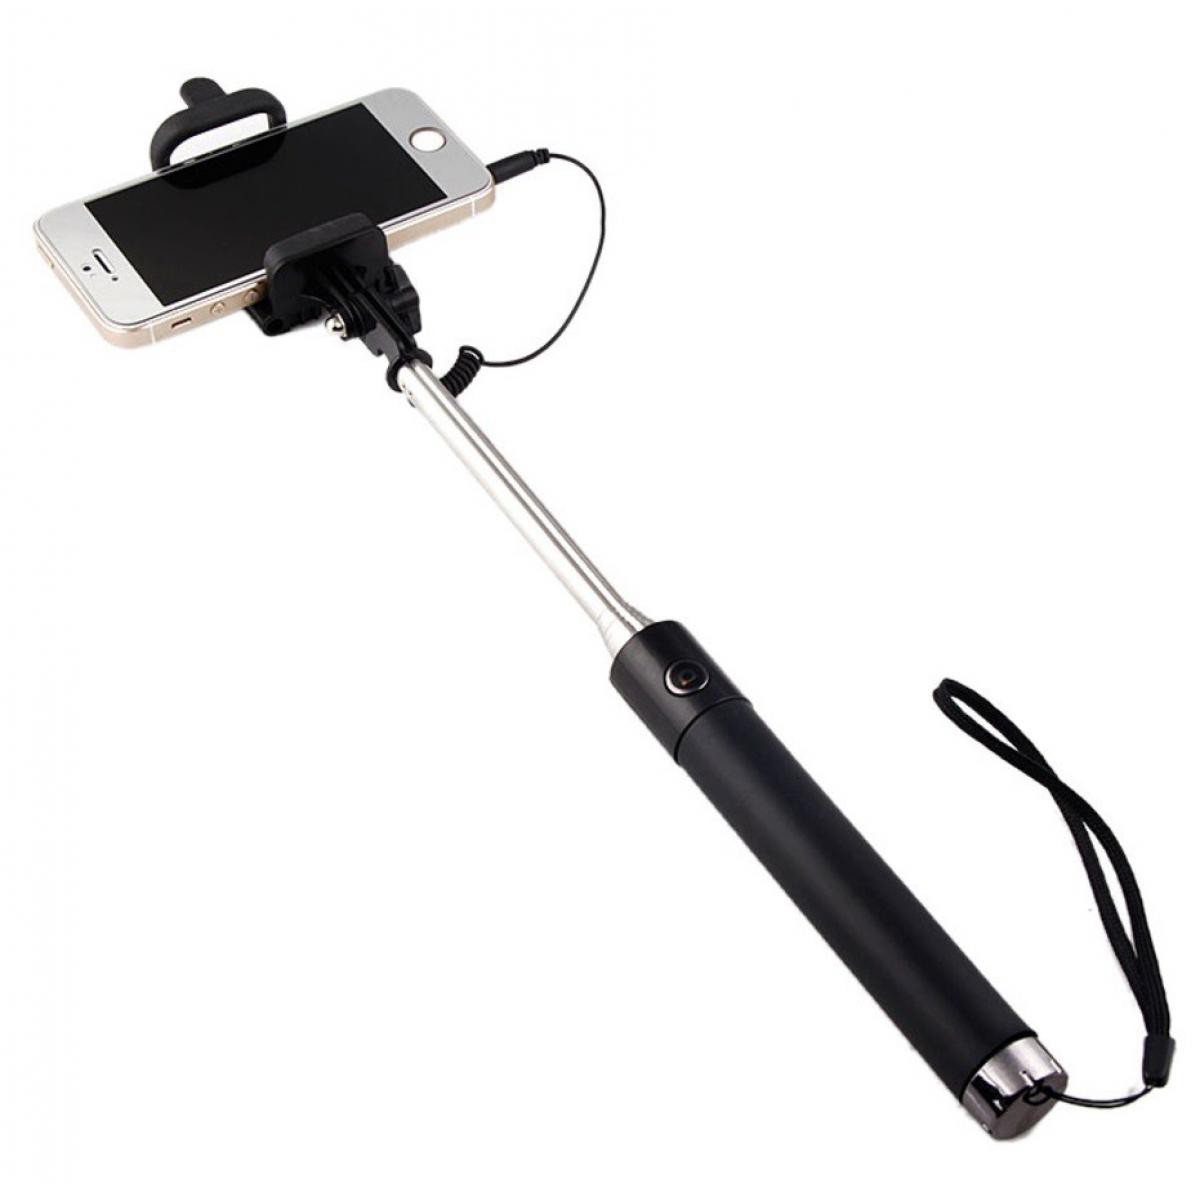 Shot - Perche Selfie Metal pour "XIAOMI Redmi 9C" Smartphone avec Cable Jack Selfie Stick Android IOS Reglable Bouton Photo (NOIR) - Autres accessoires smartphone